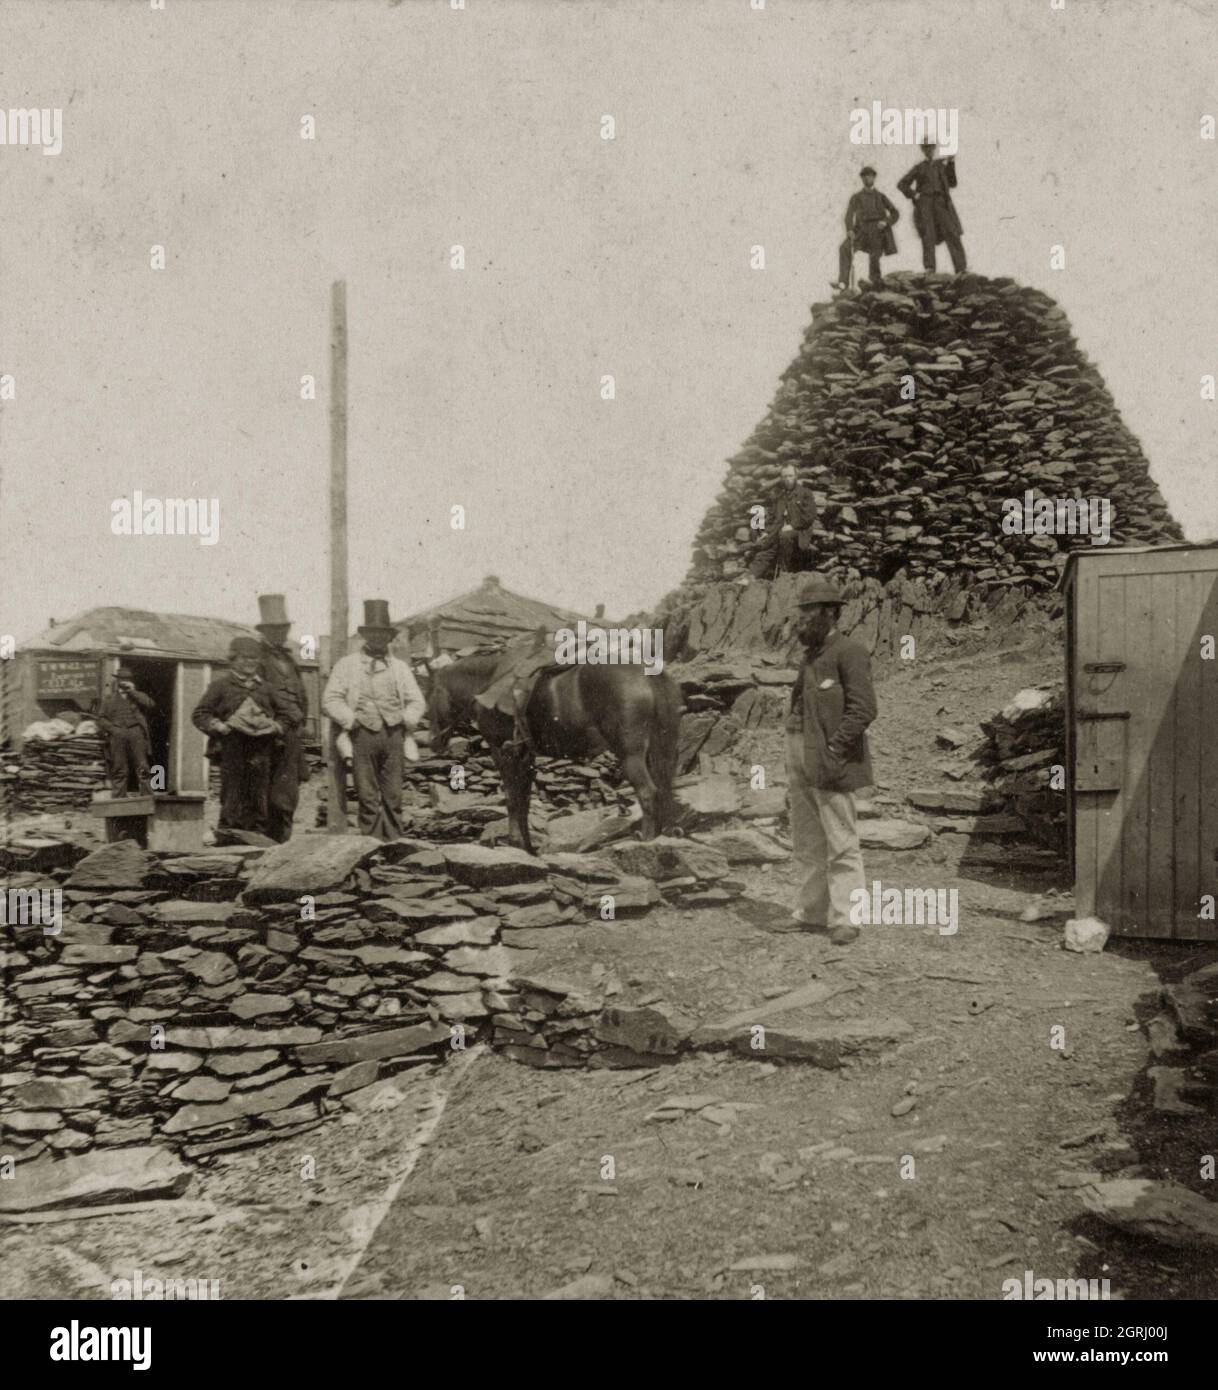 Foto vintage de 1860 de los hoteles de la cumbre en Mount Snowdon o Yr Wyddfa en el norte de Gales Reino Unido. En la época victoriana había una serie de cabañas que servían refrescos y proporcionaban refugio a los turistas que visitaban la montaña. Foto de stock